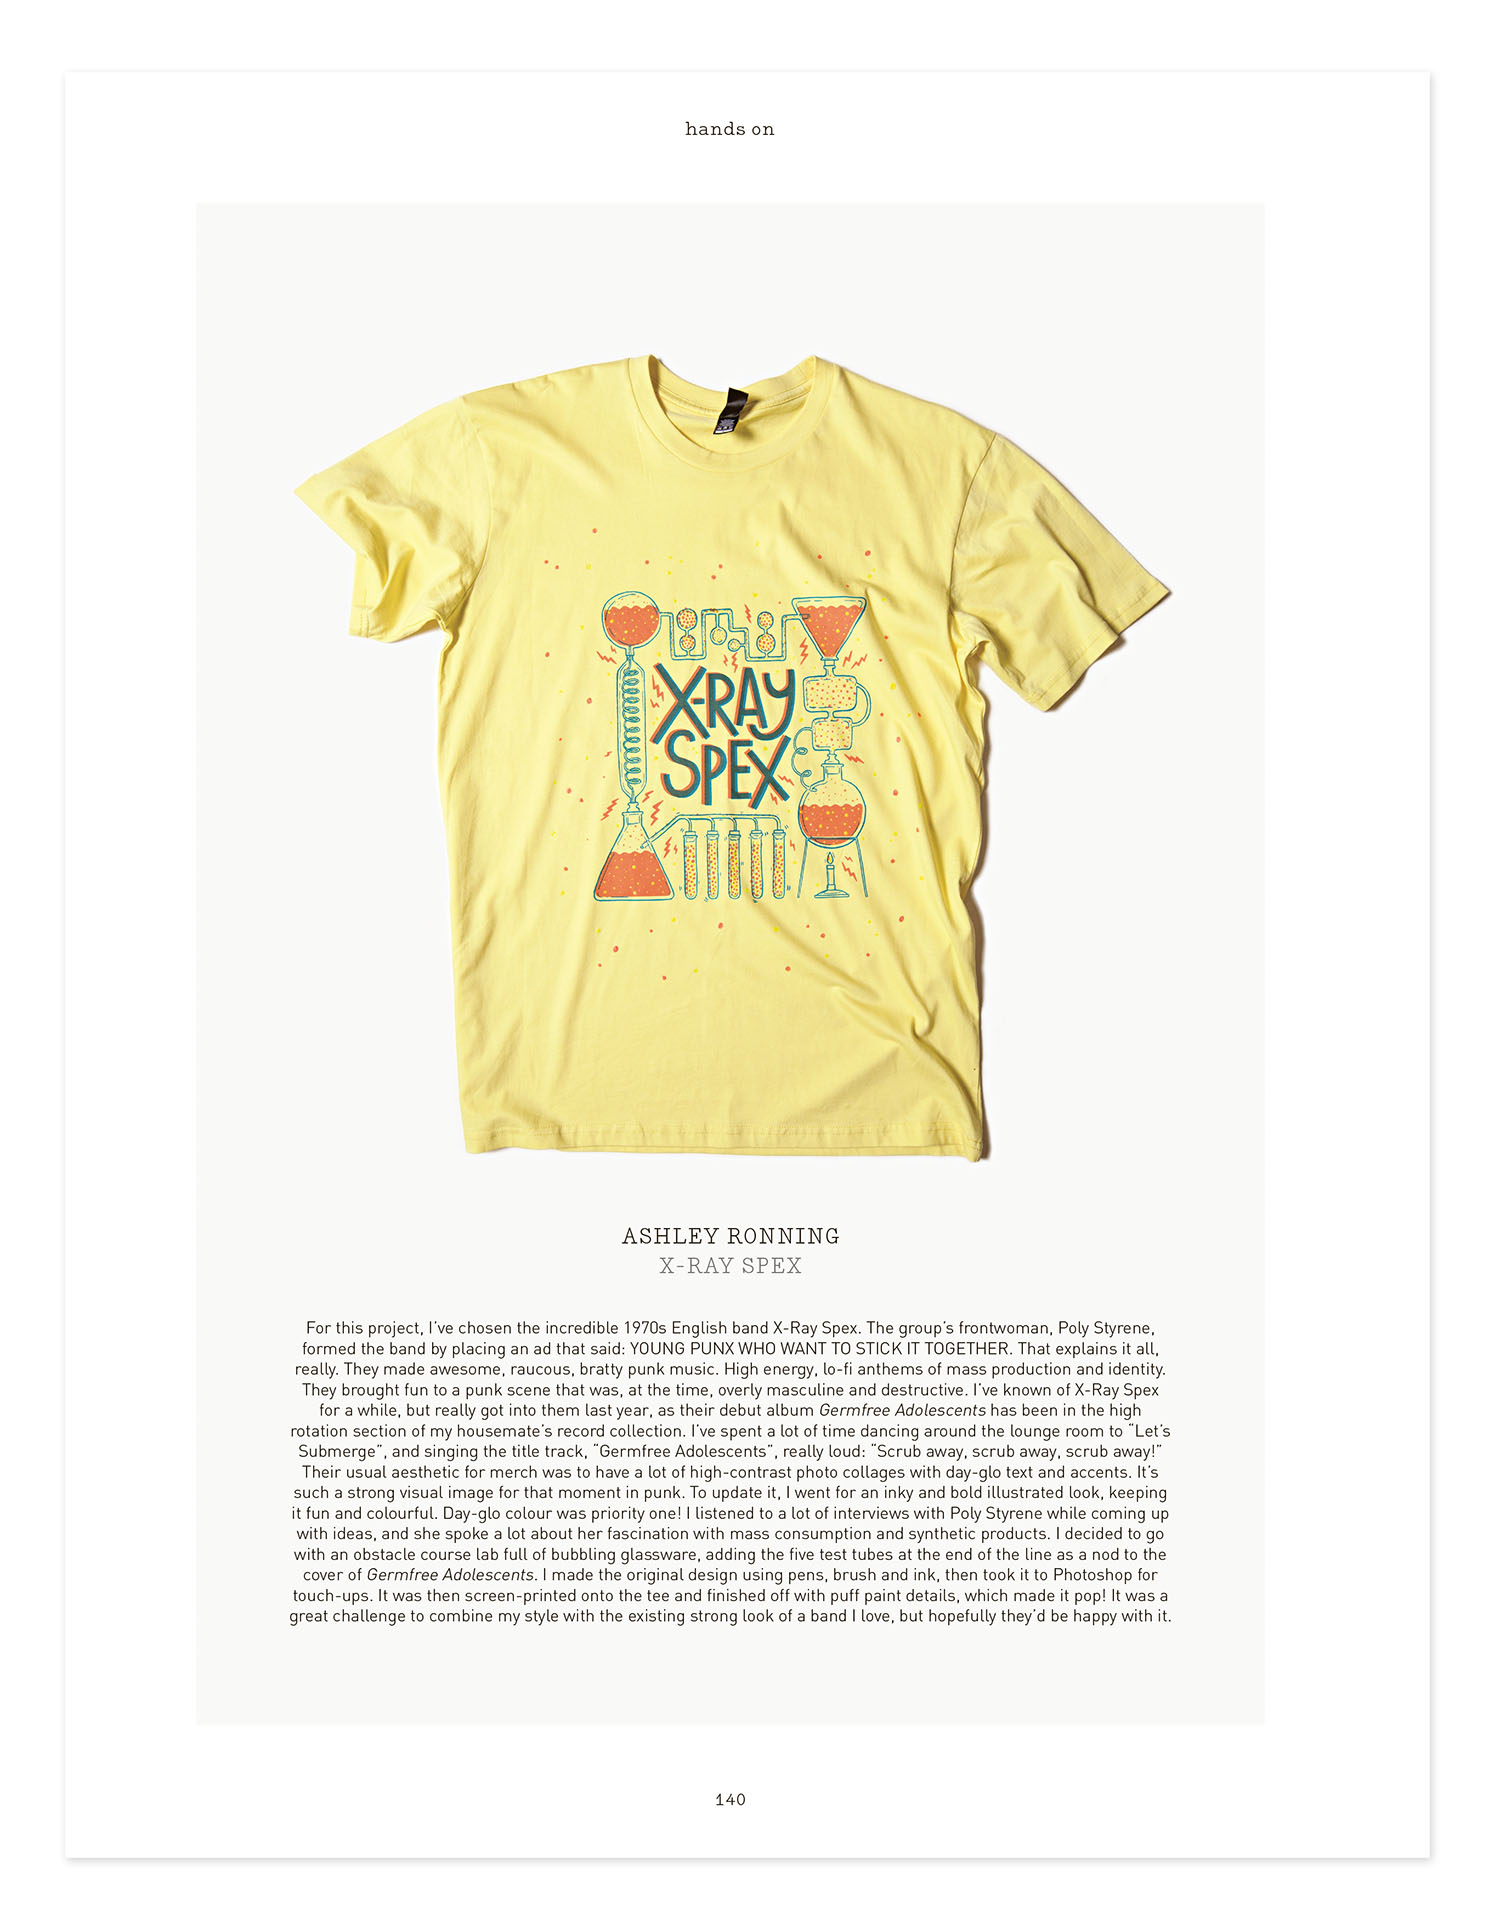 BlountDecor Printed T-Shirt,Holiday Theme Watercolor Fashion Personality Customization